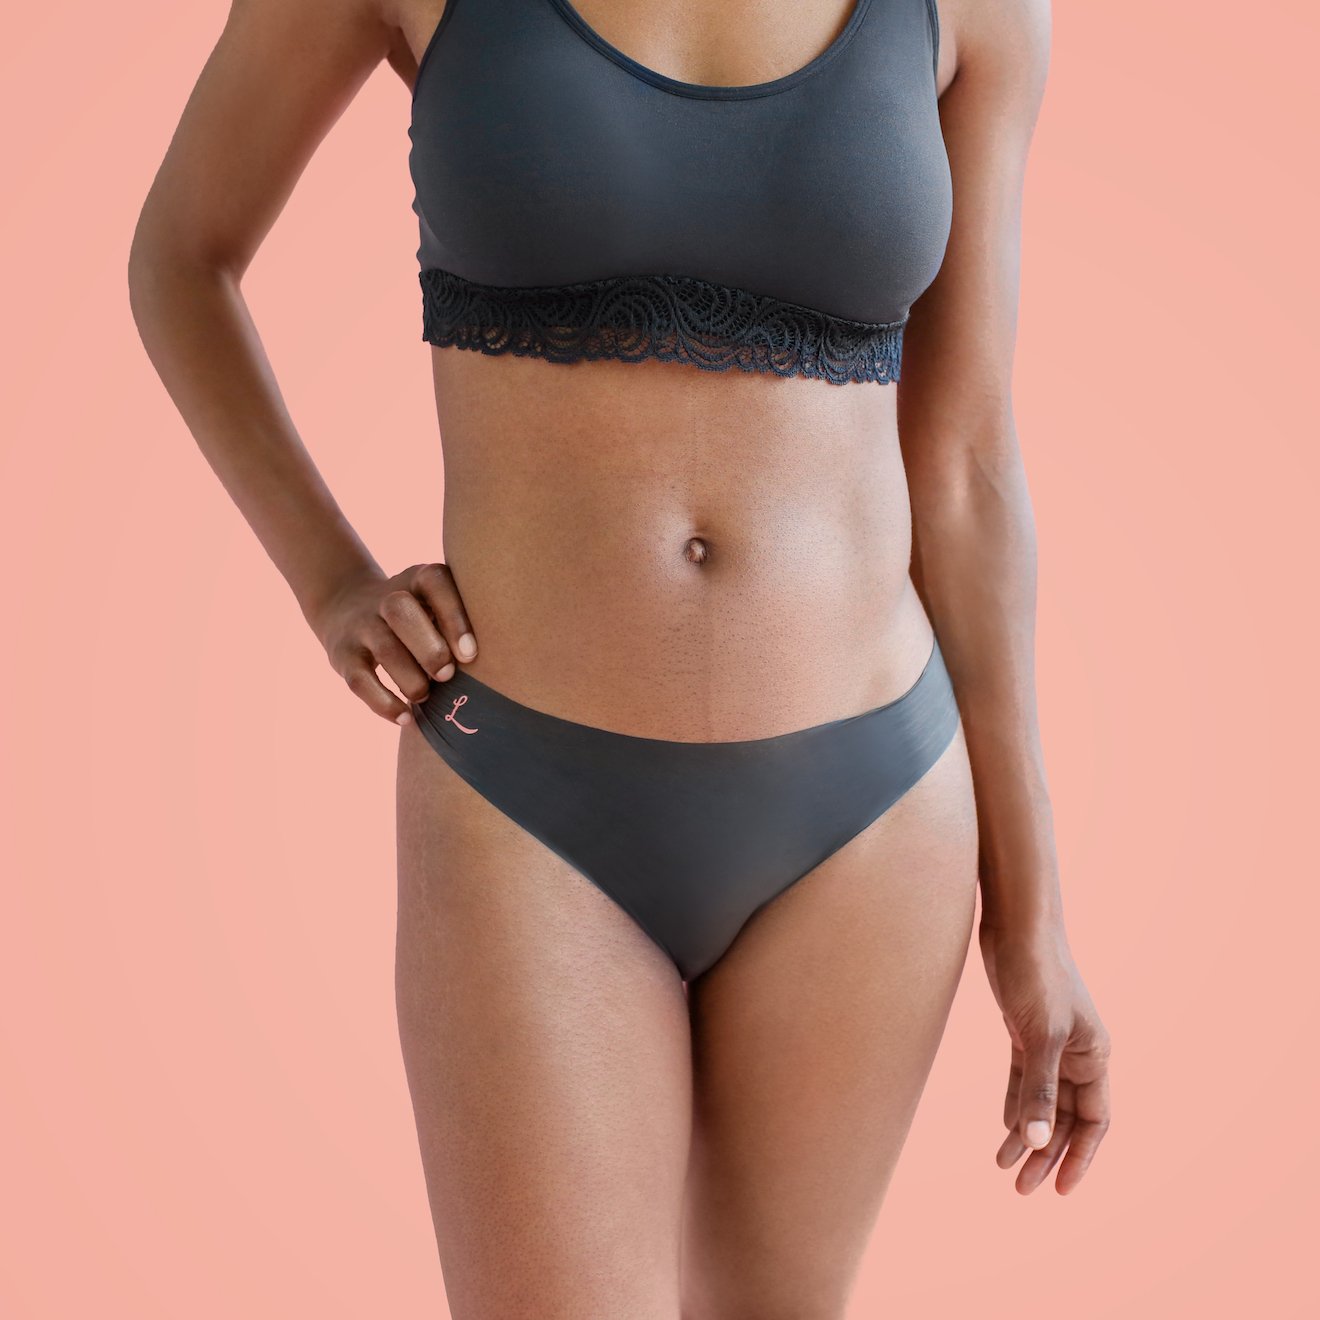 The front side of a woman wearing Lorals Latex Bikini panties |Bikini